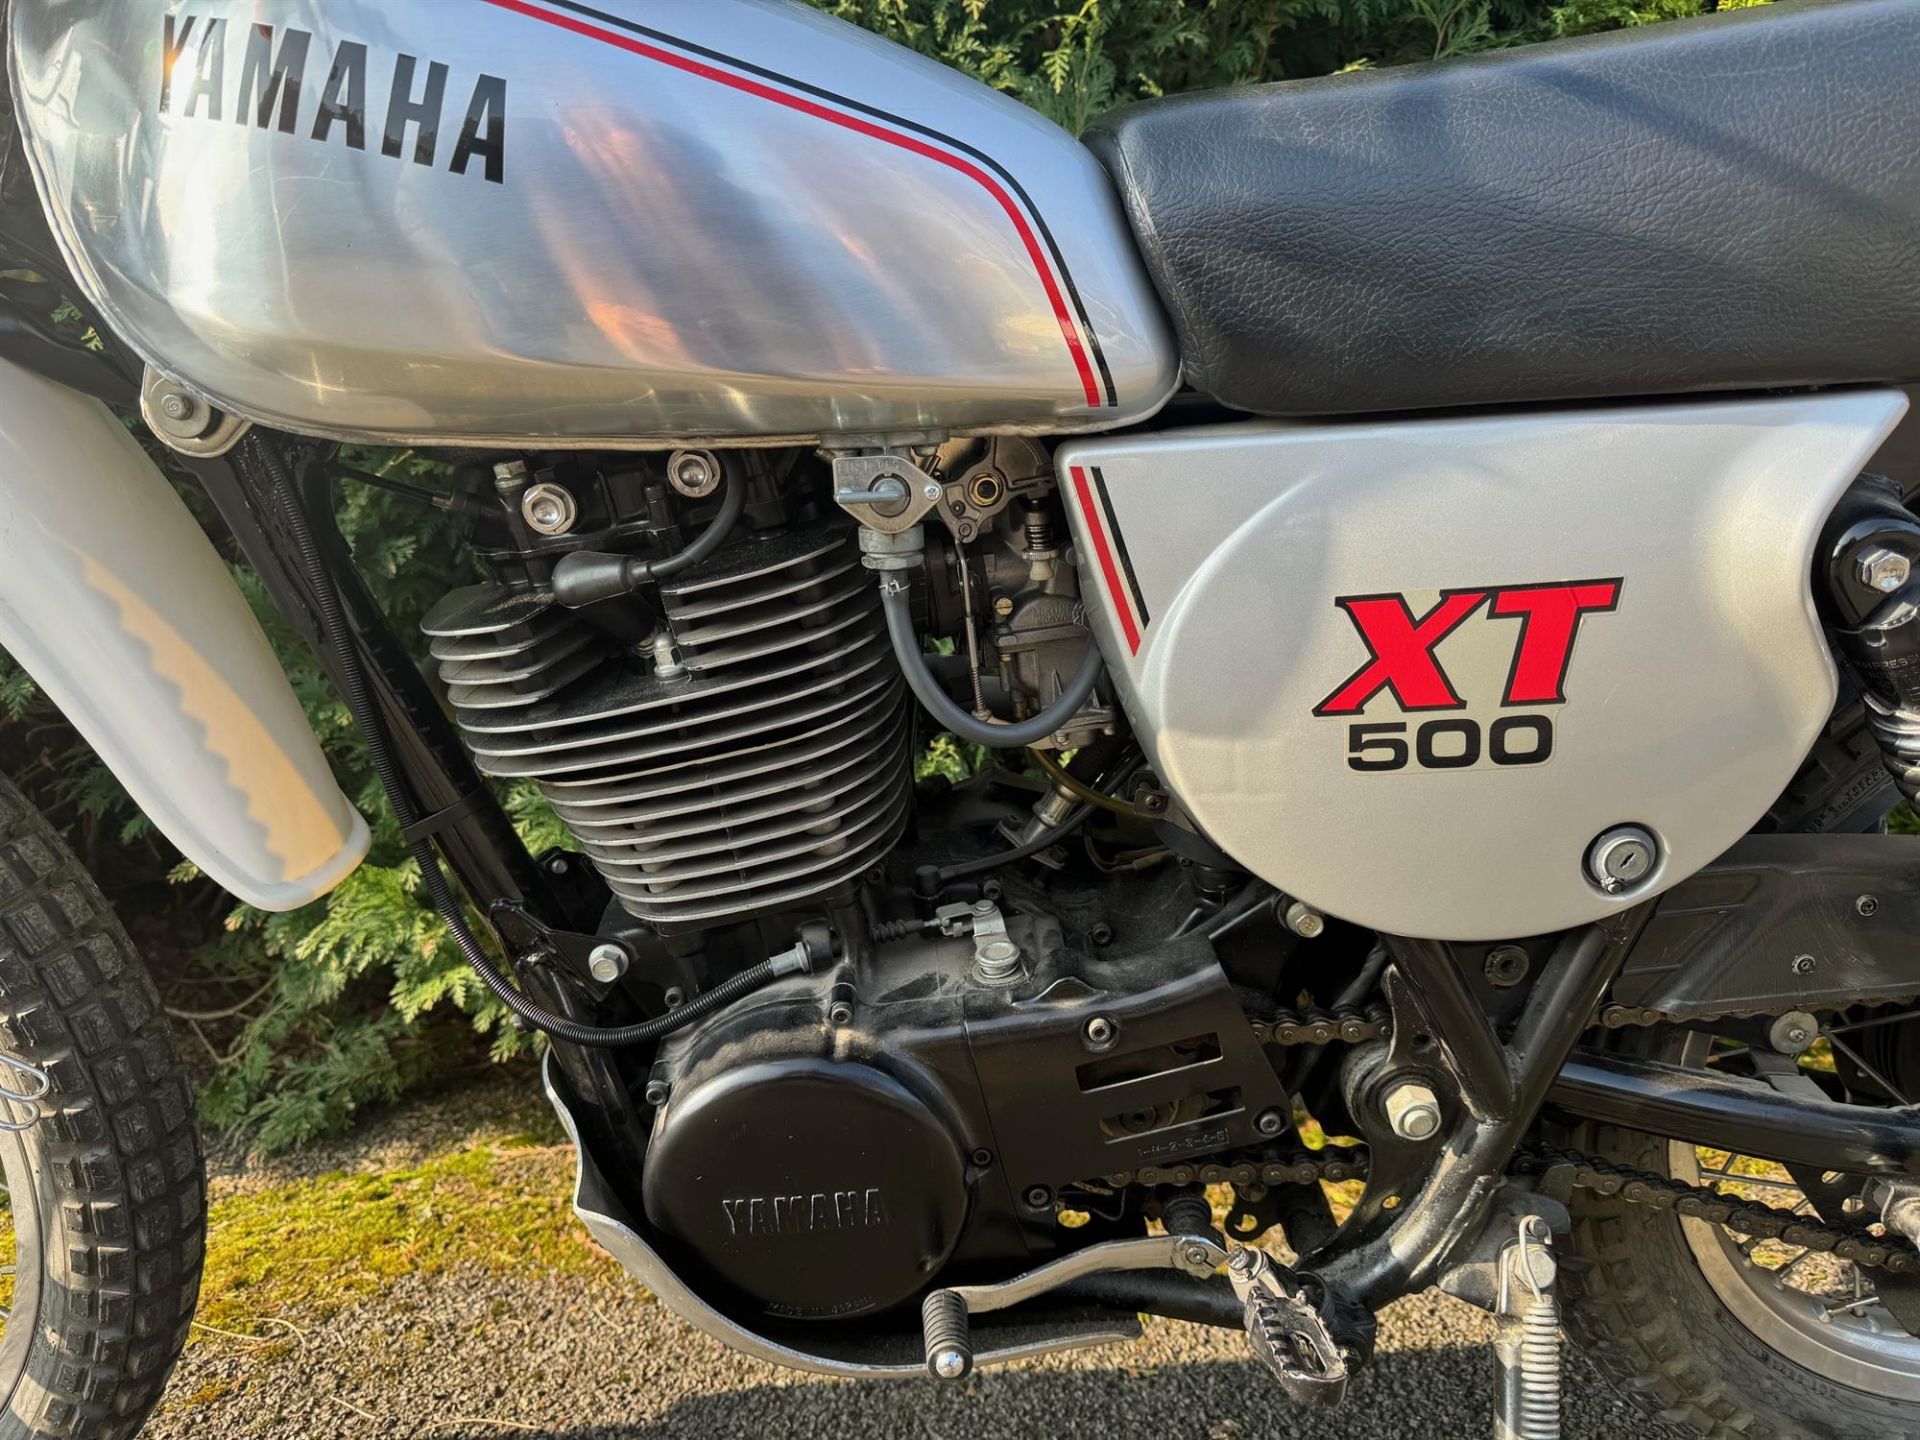 1981 Yamaha XT500 499cc - Image 3 of 10